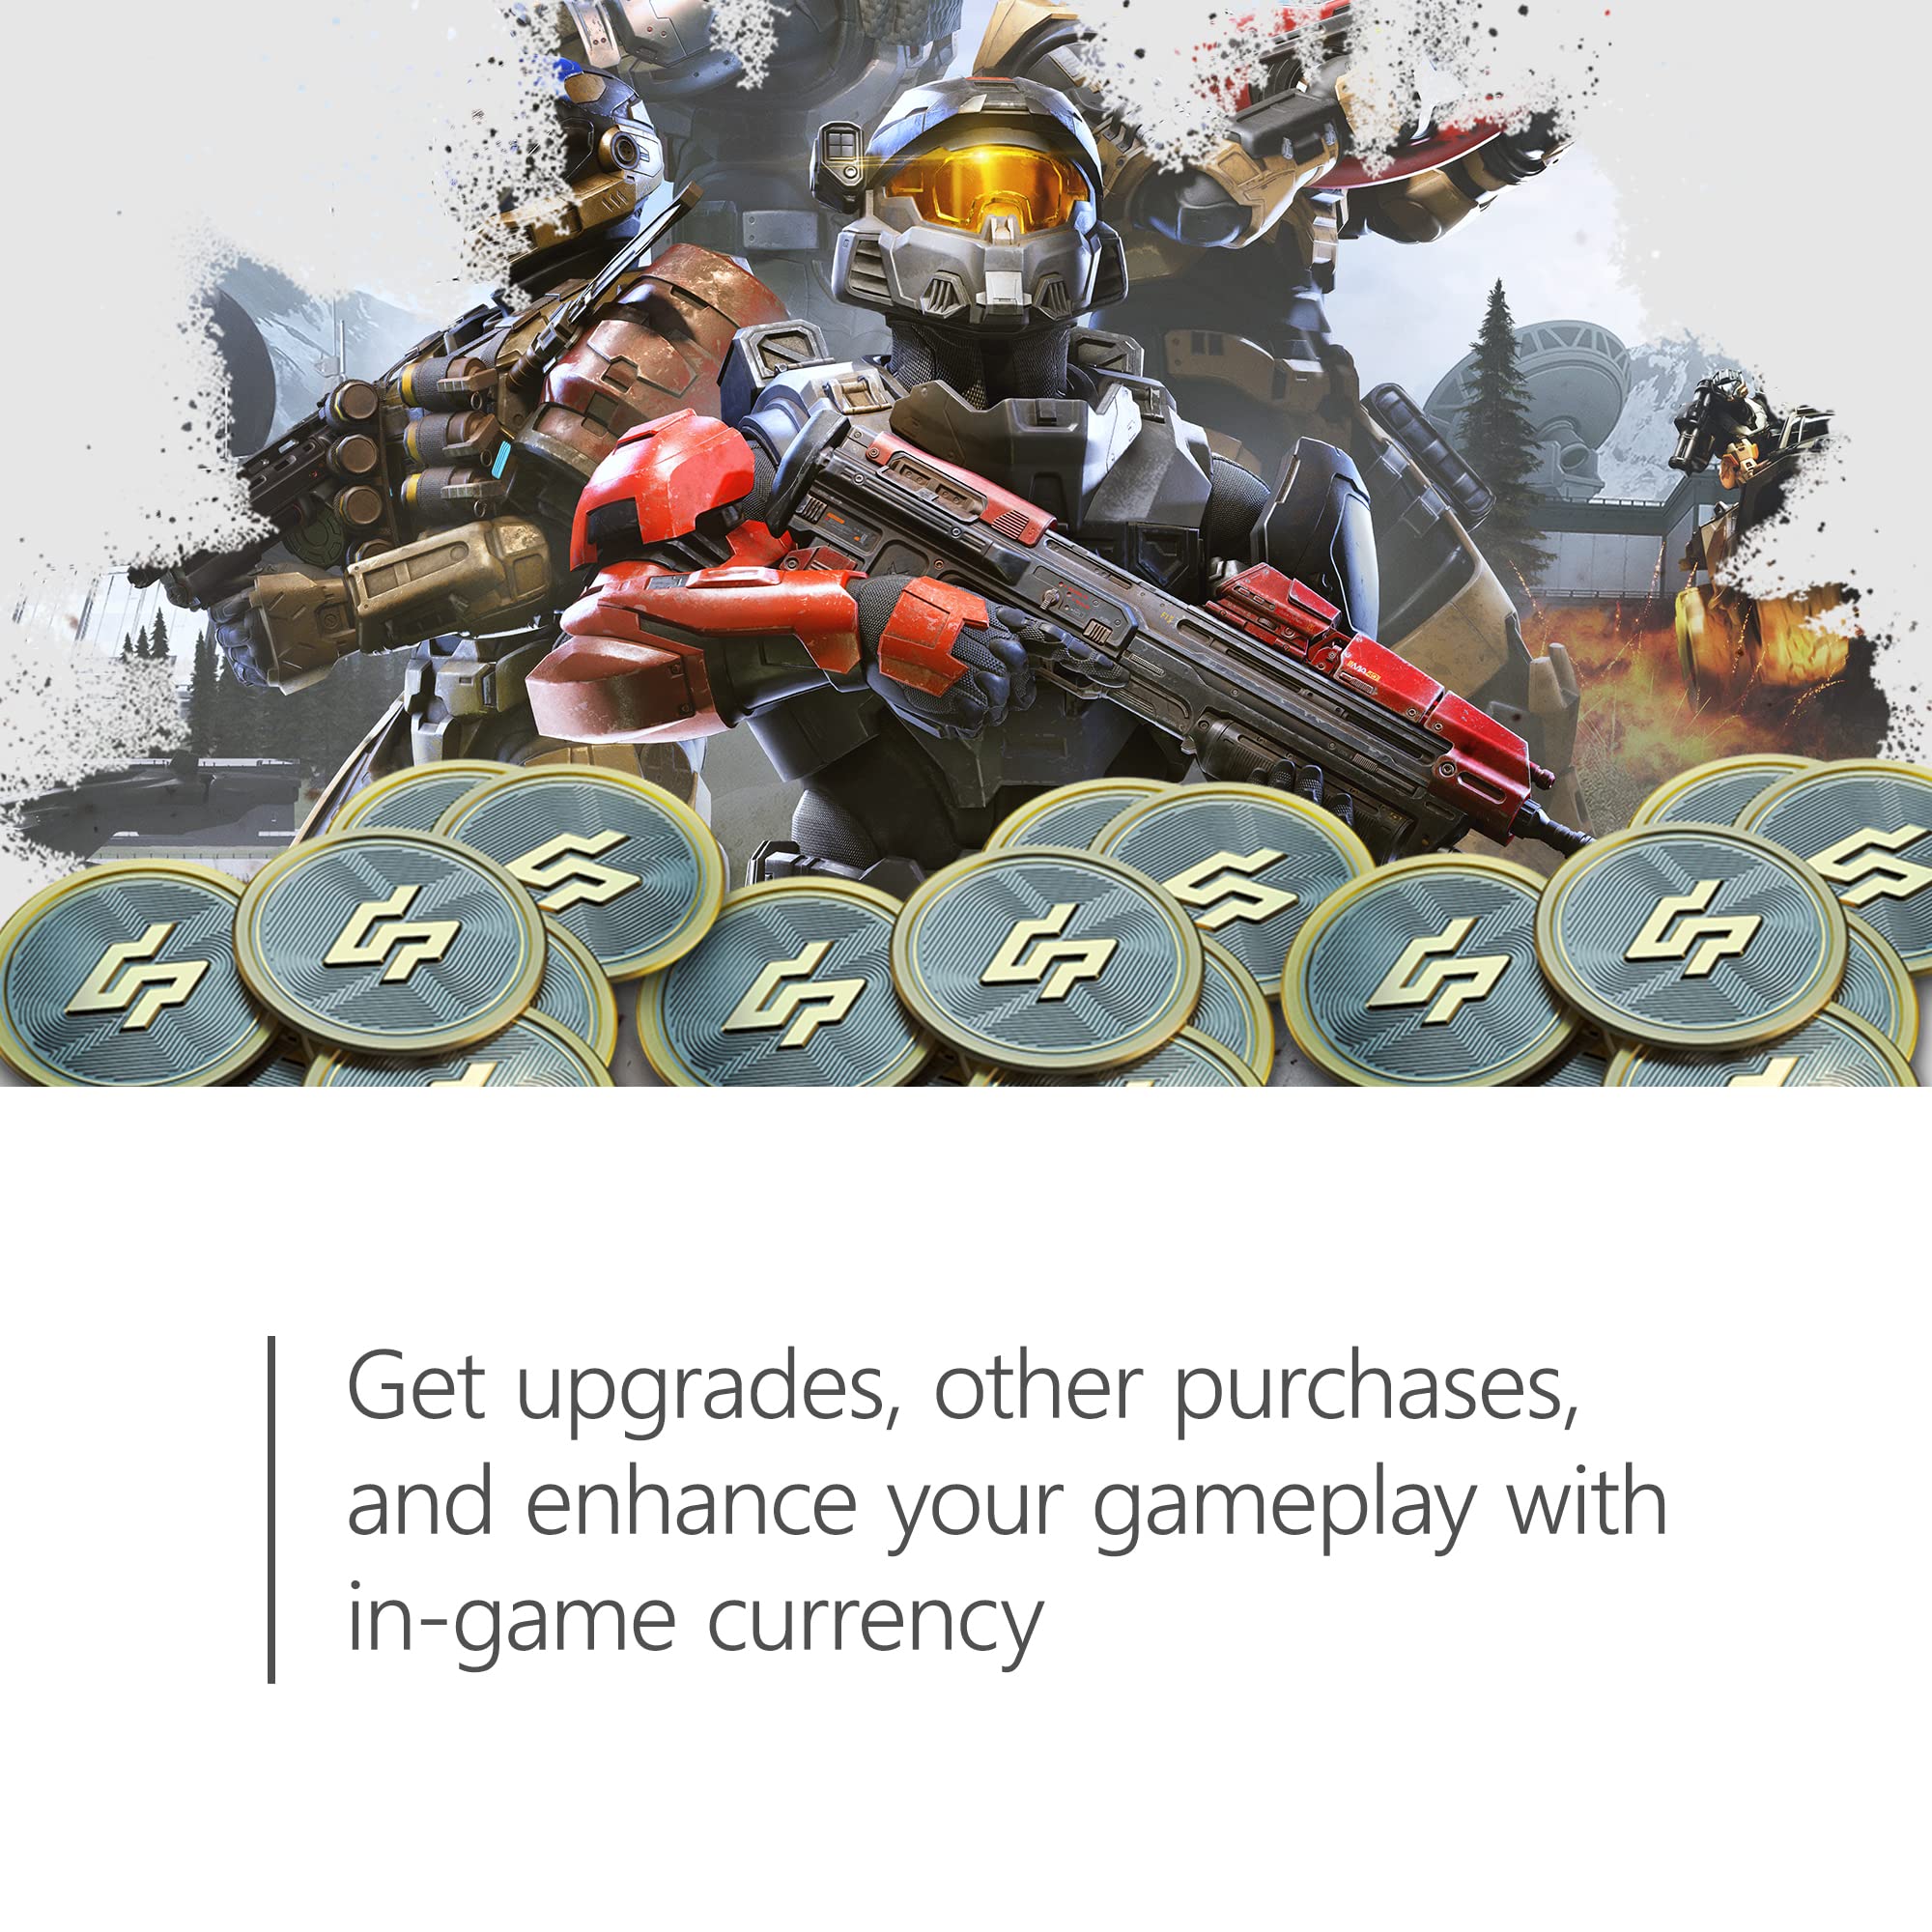 $40 Xbox Gift Card [Digital Code]